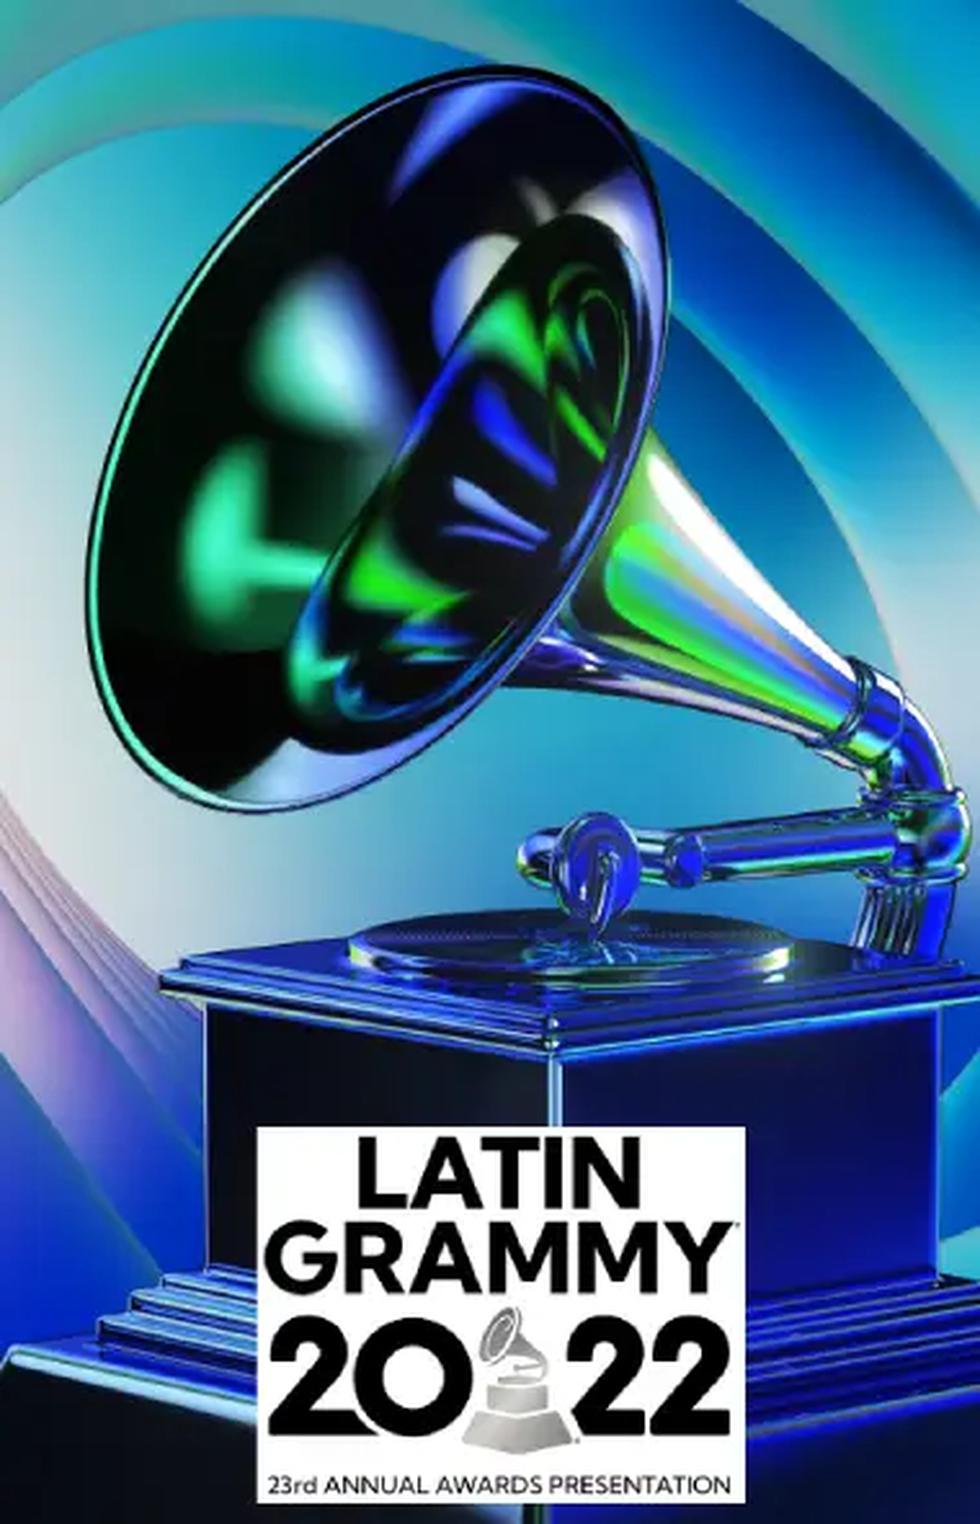 En qué canal transmiten los Latin Grammy latino 2022 en vivo y en